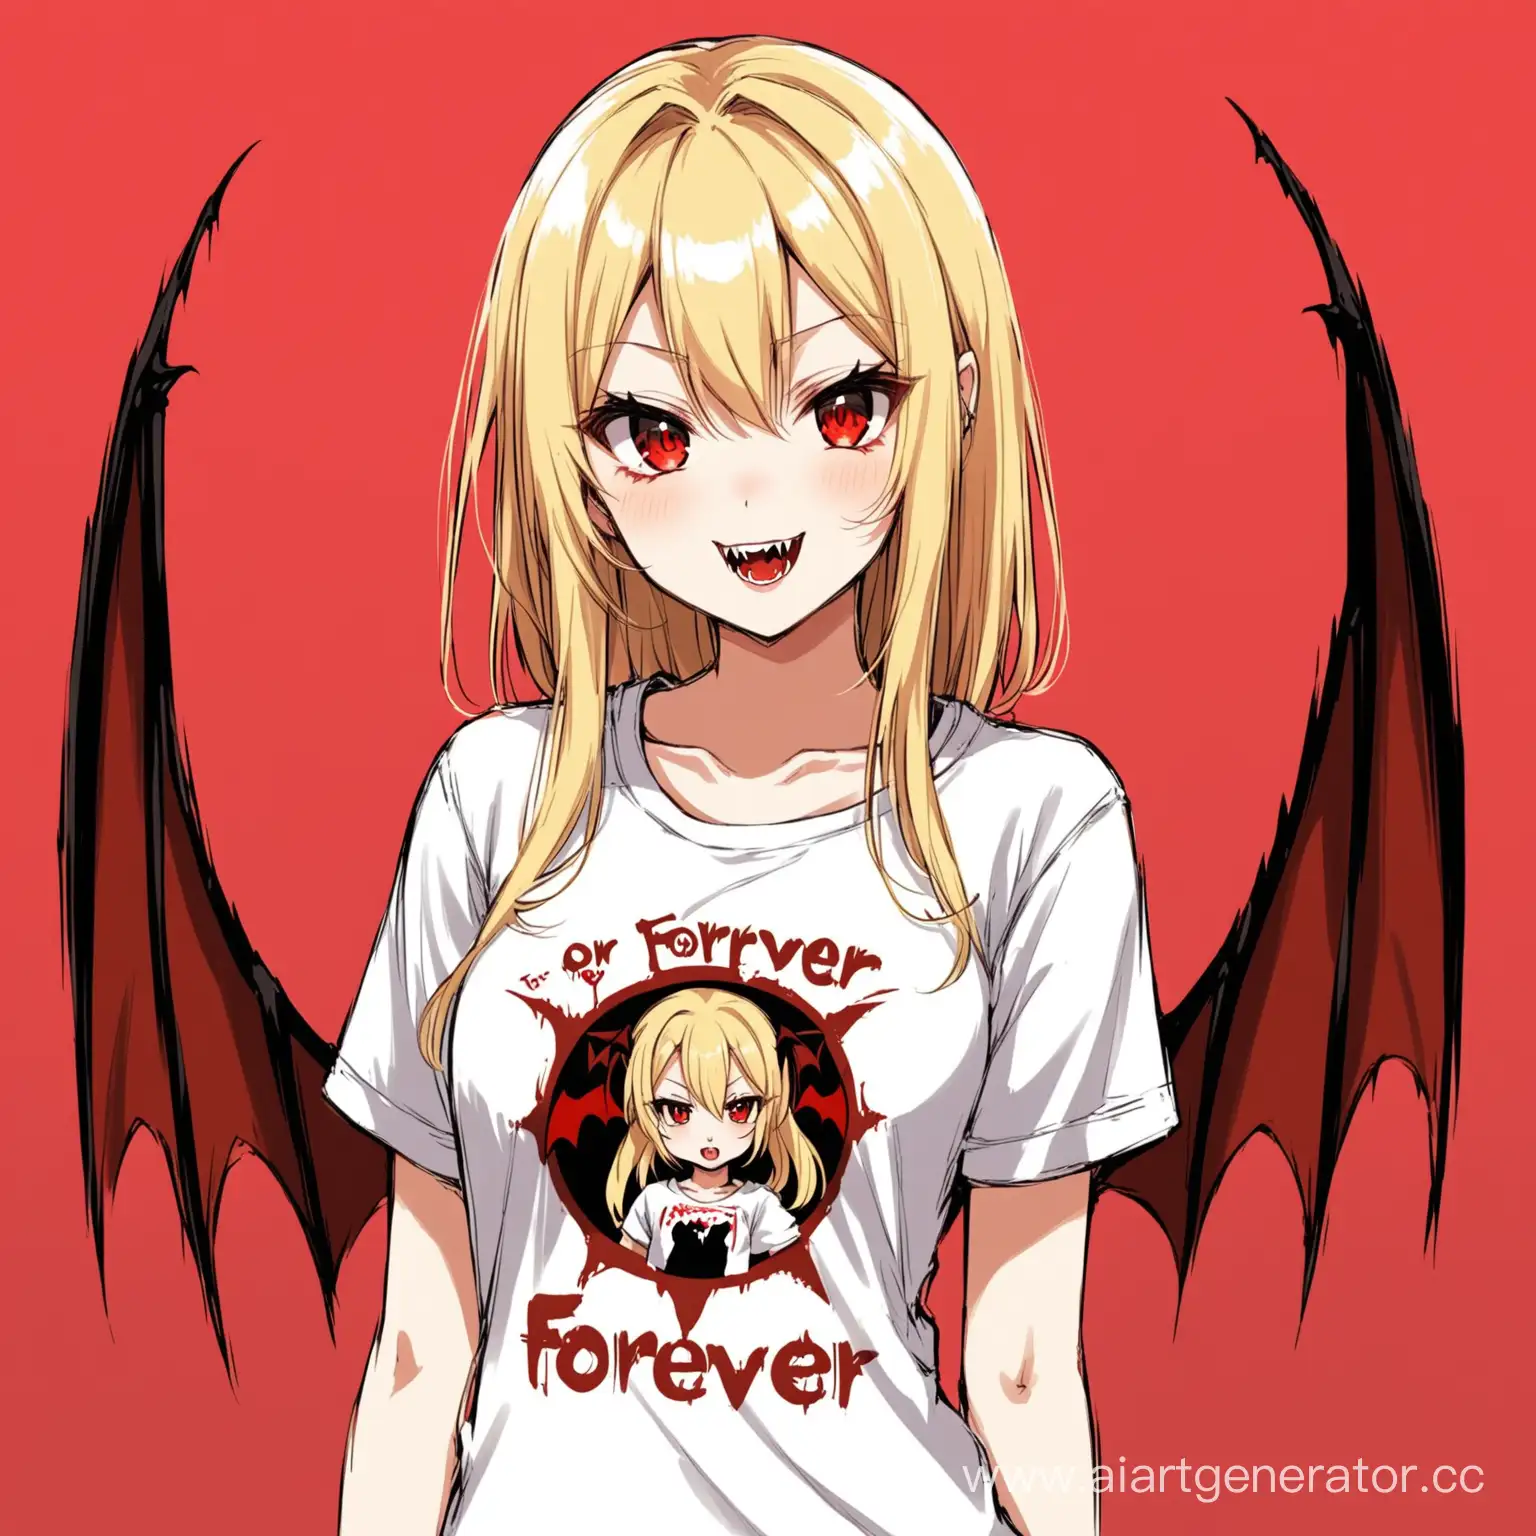 АНИМЕ девушка блондинка вампир с красными глазами на футболке написано Forever233